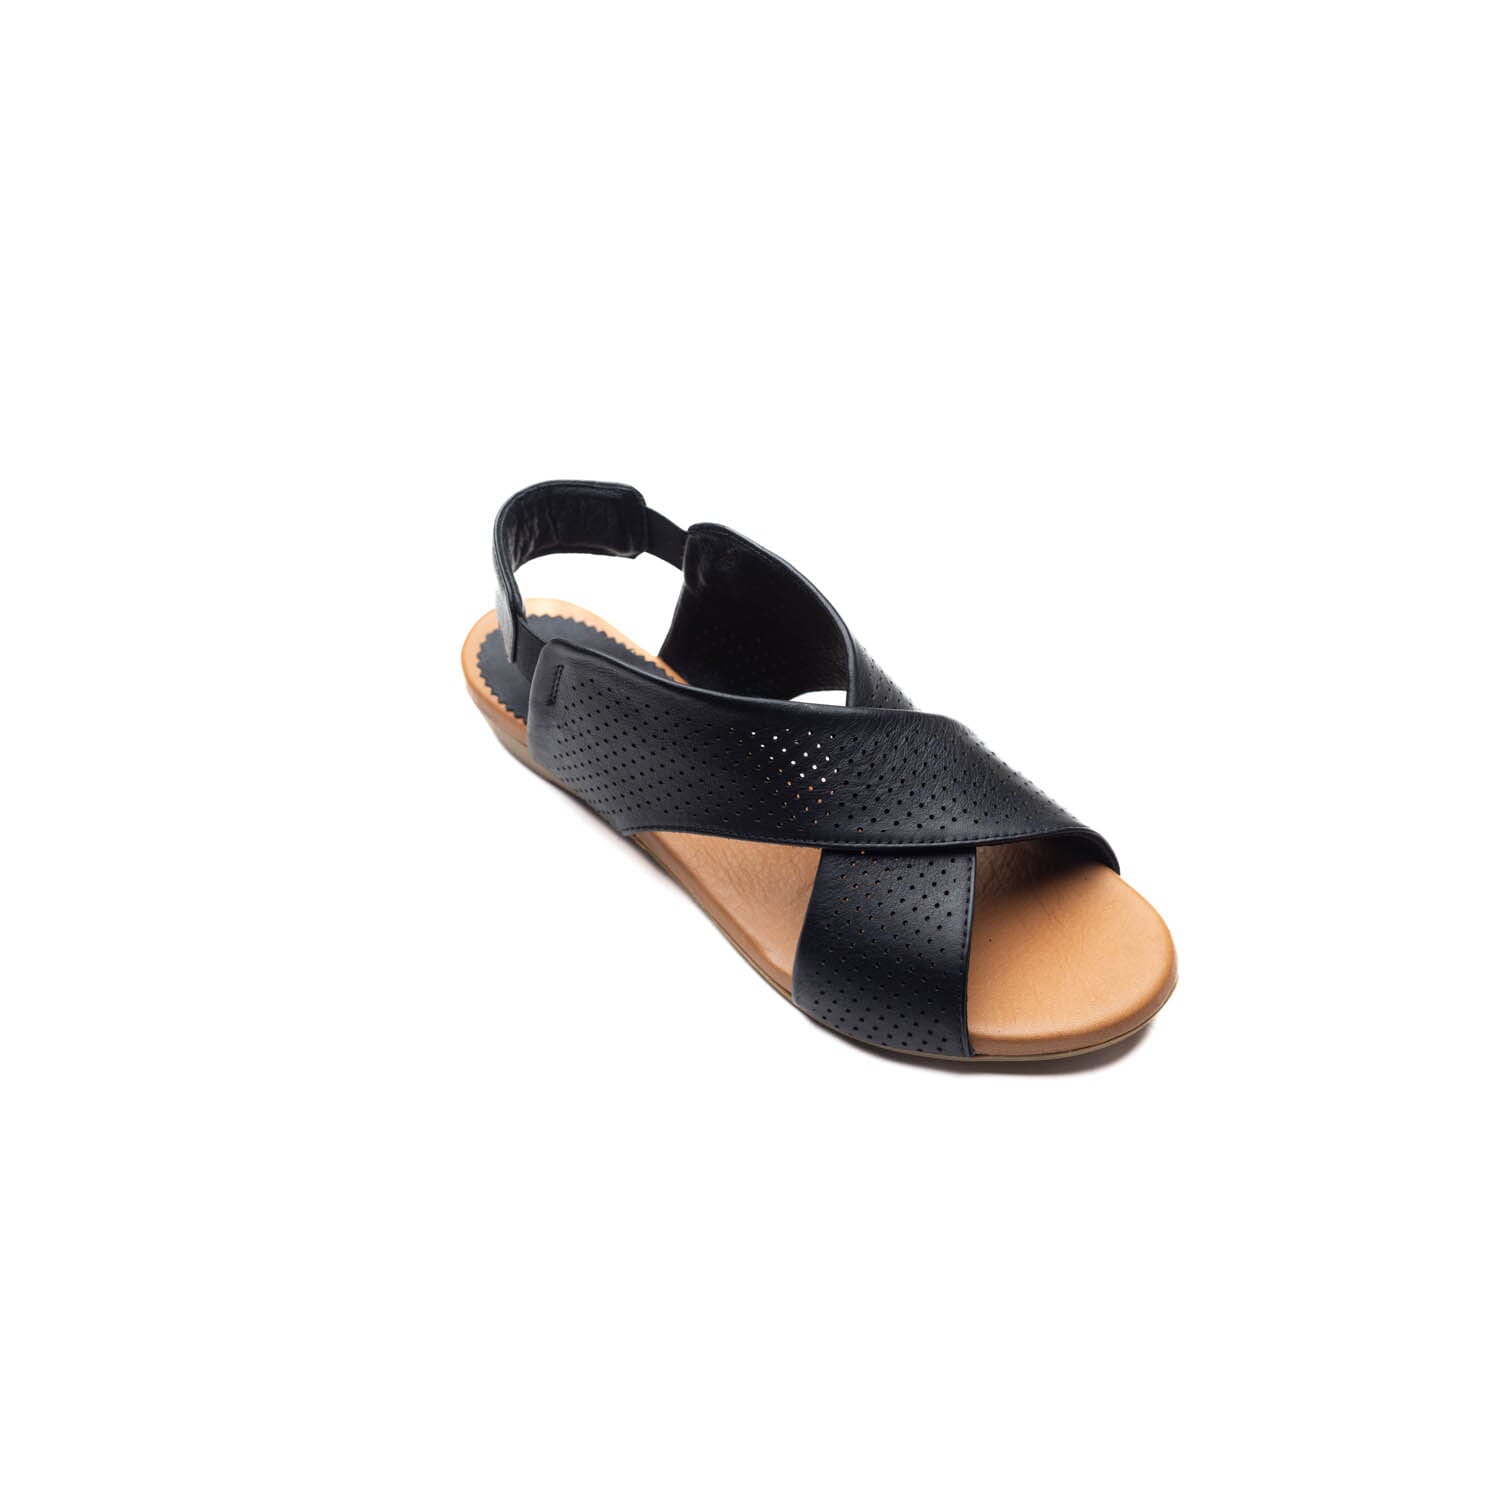 Sofia Mare – 9011Xz – Black – Perocili Shoes